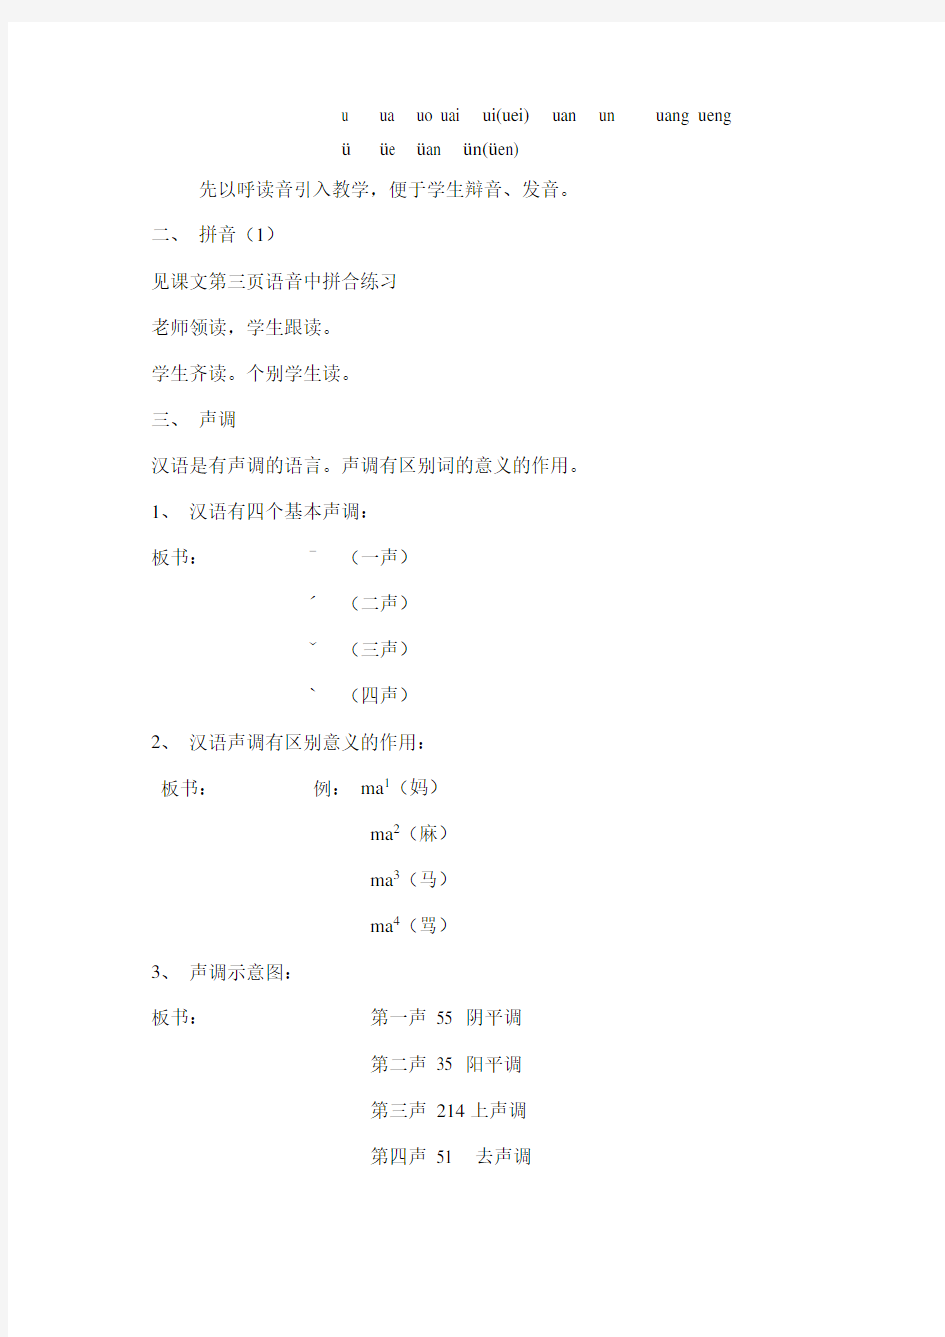 北京语言大学《发展汉语》初级汉语口语课教案